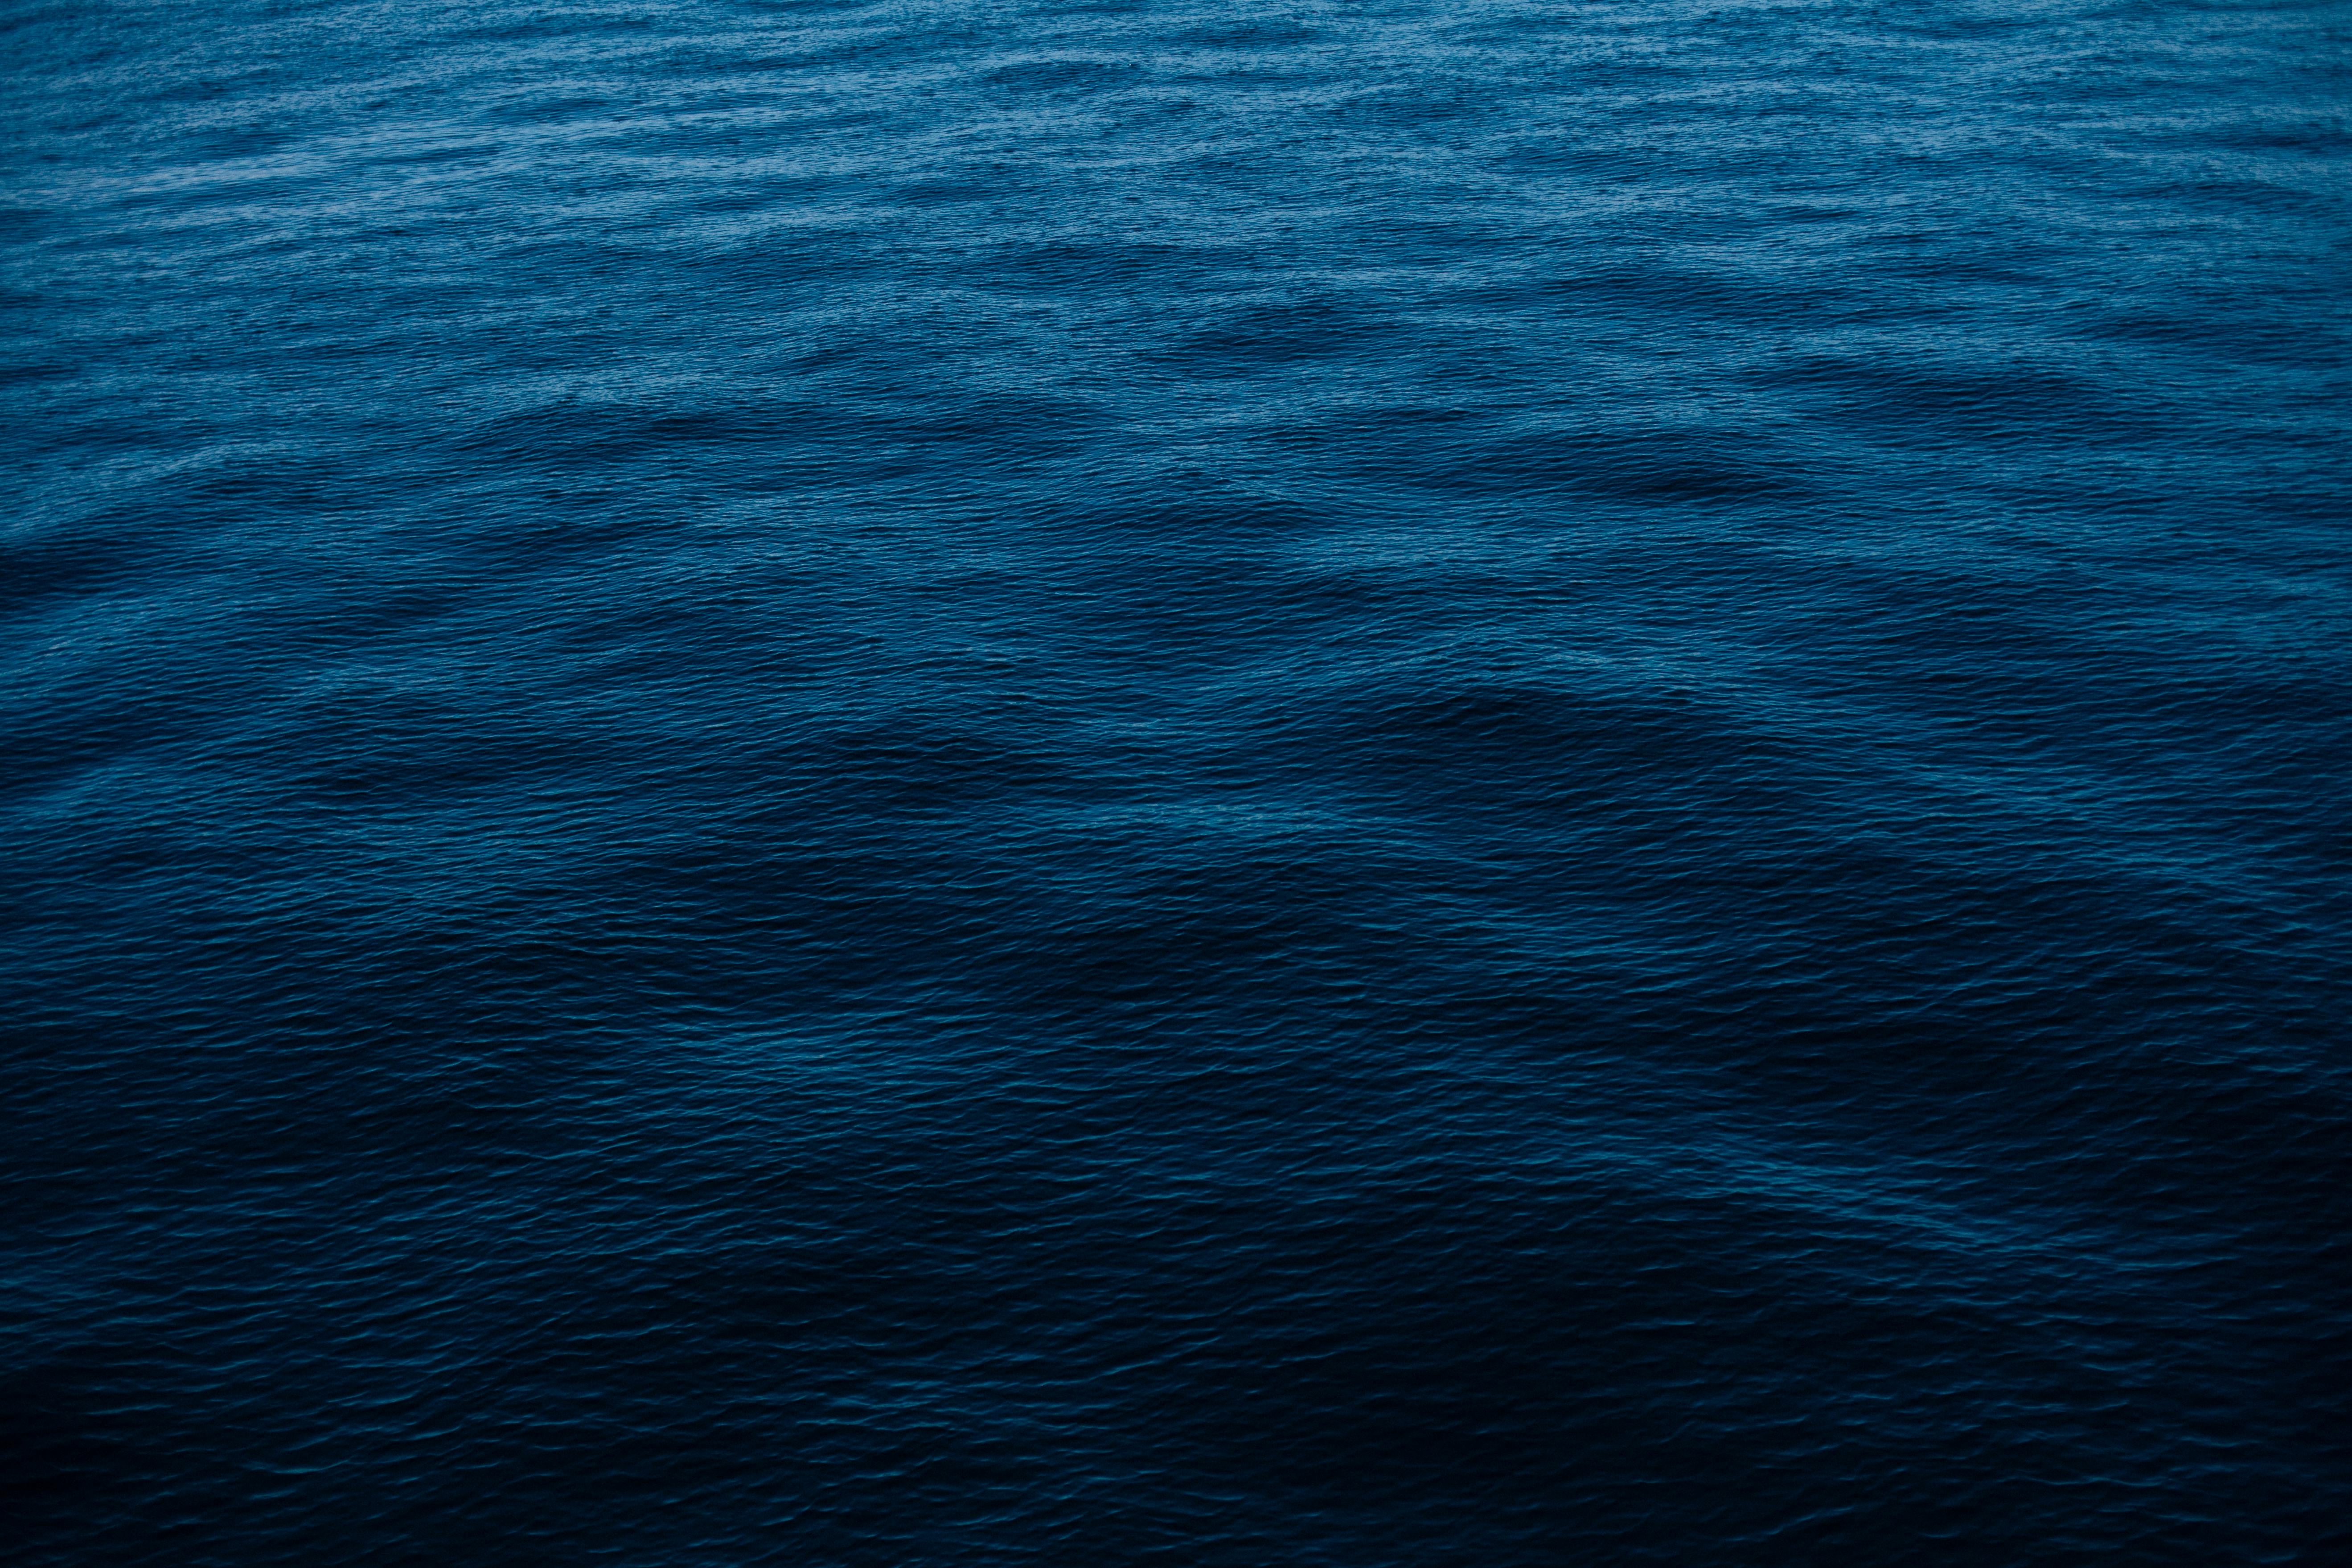 dark blue sea background